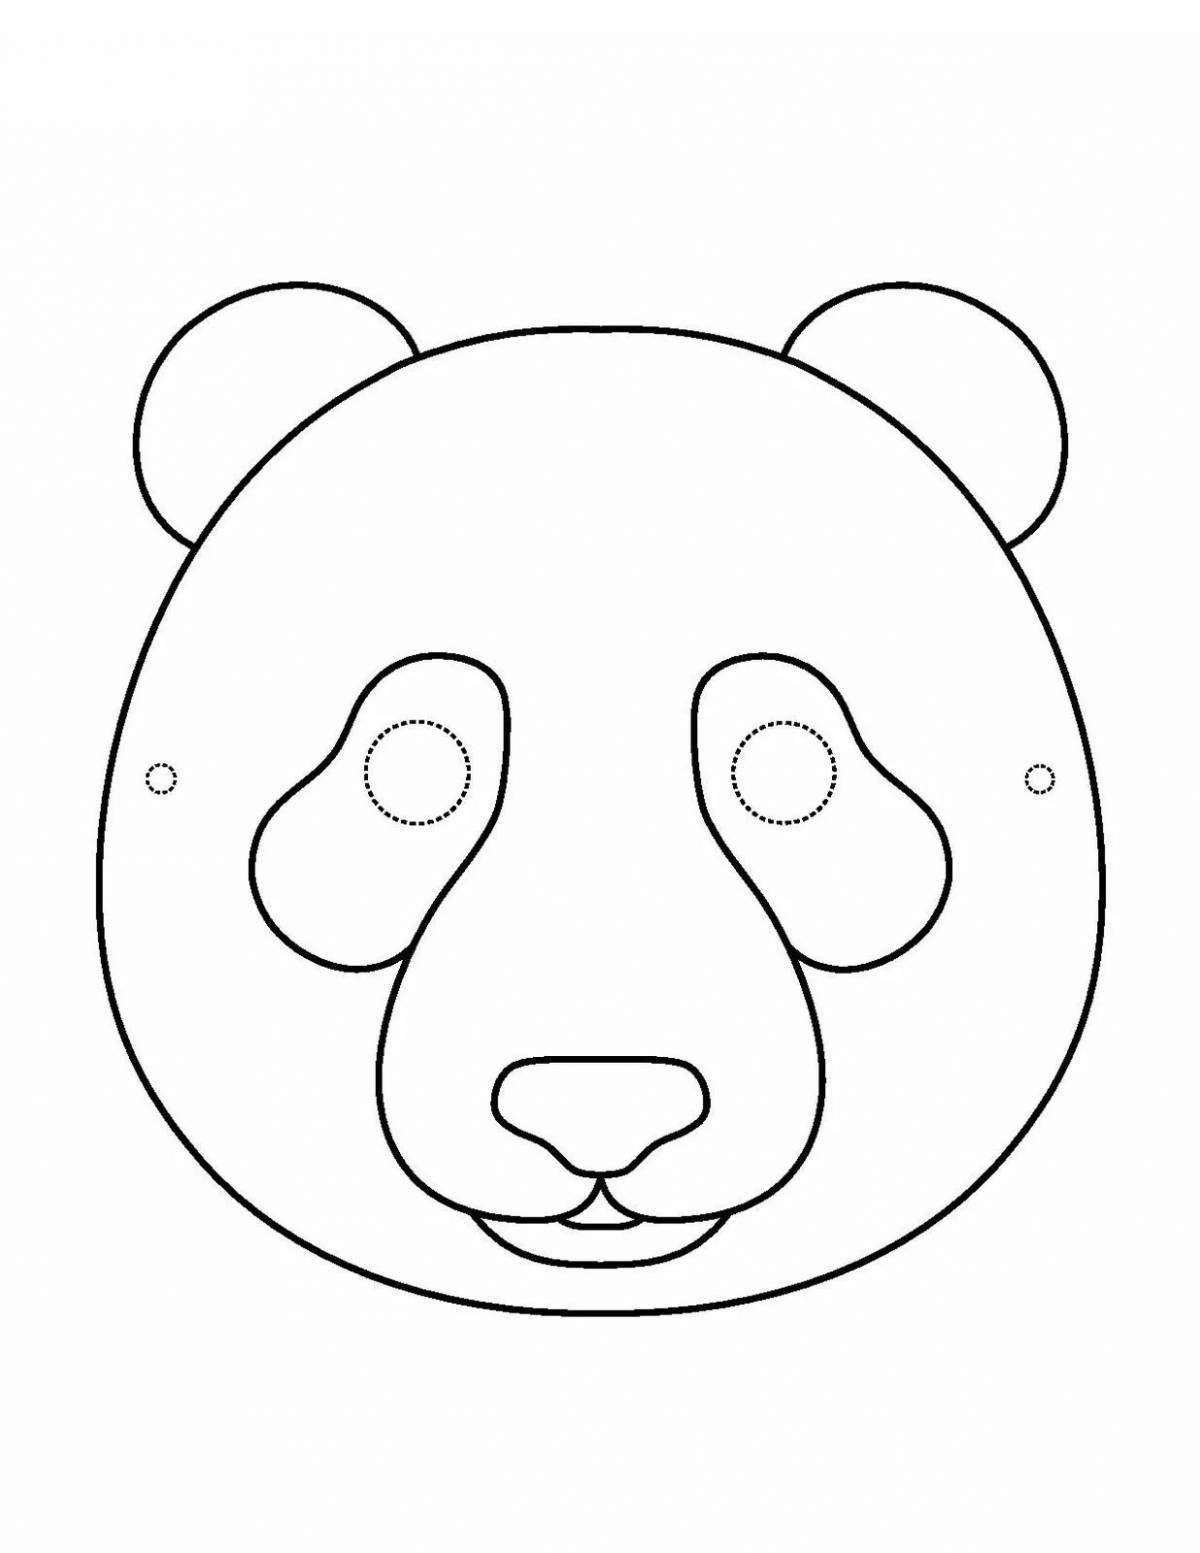 Playful bear face coloring book